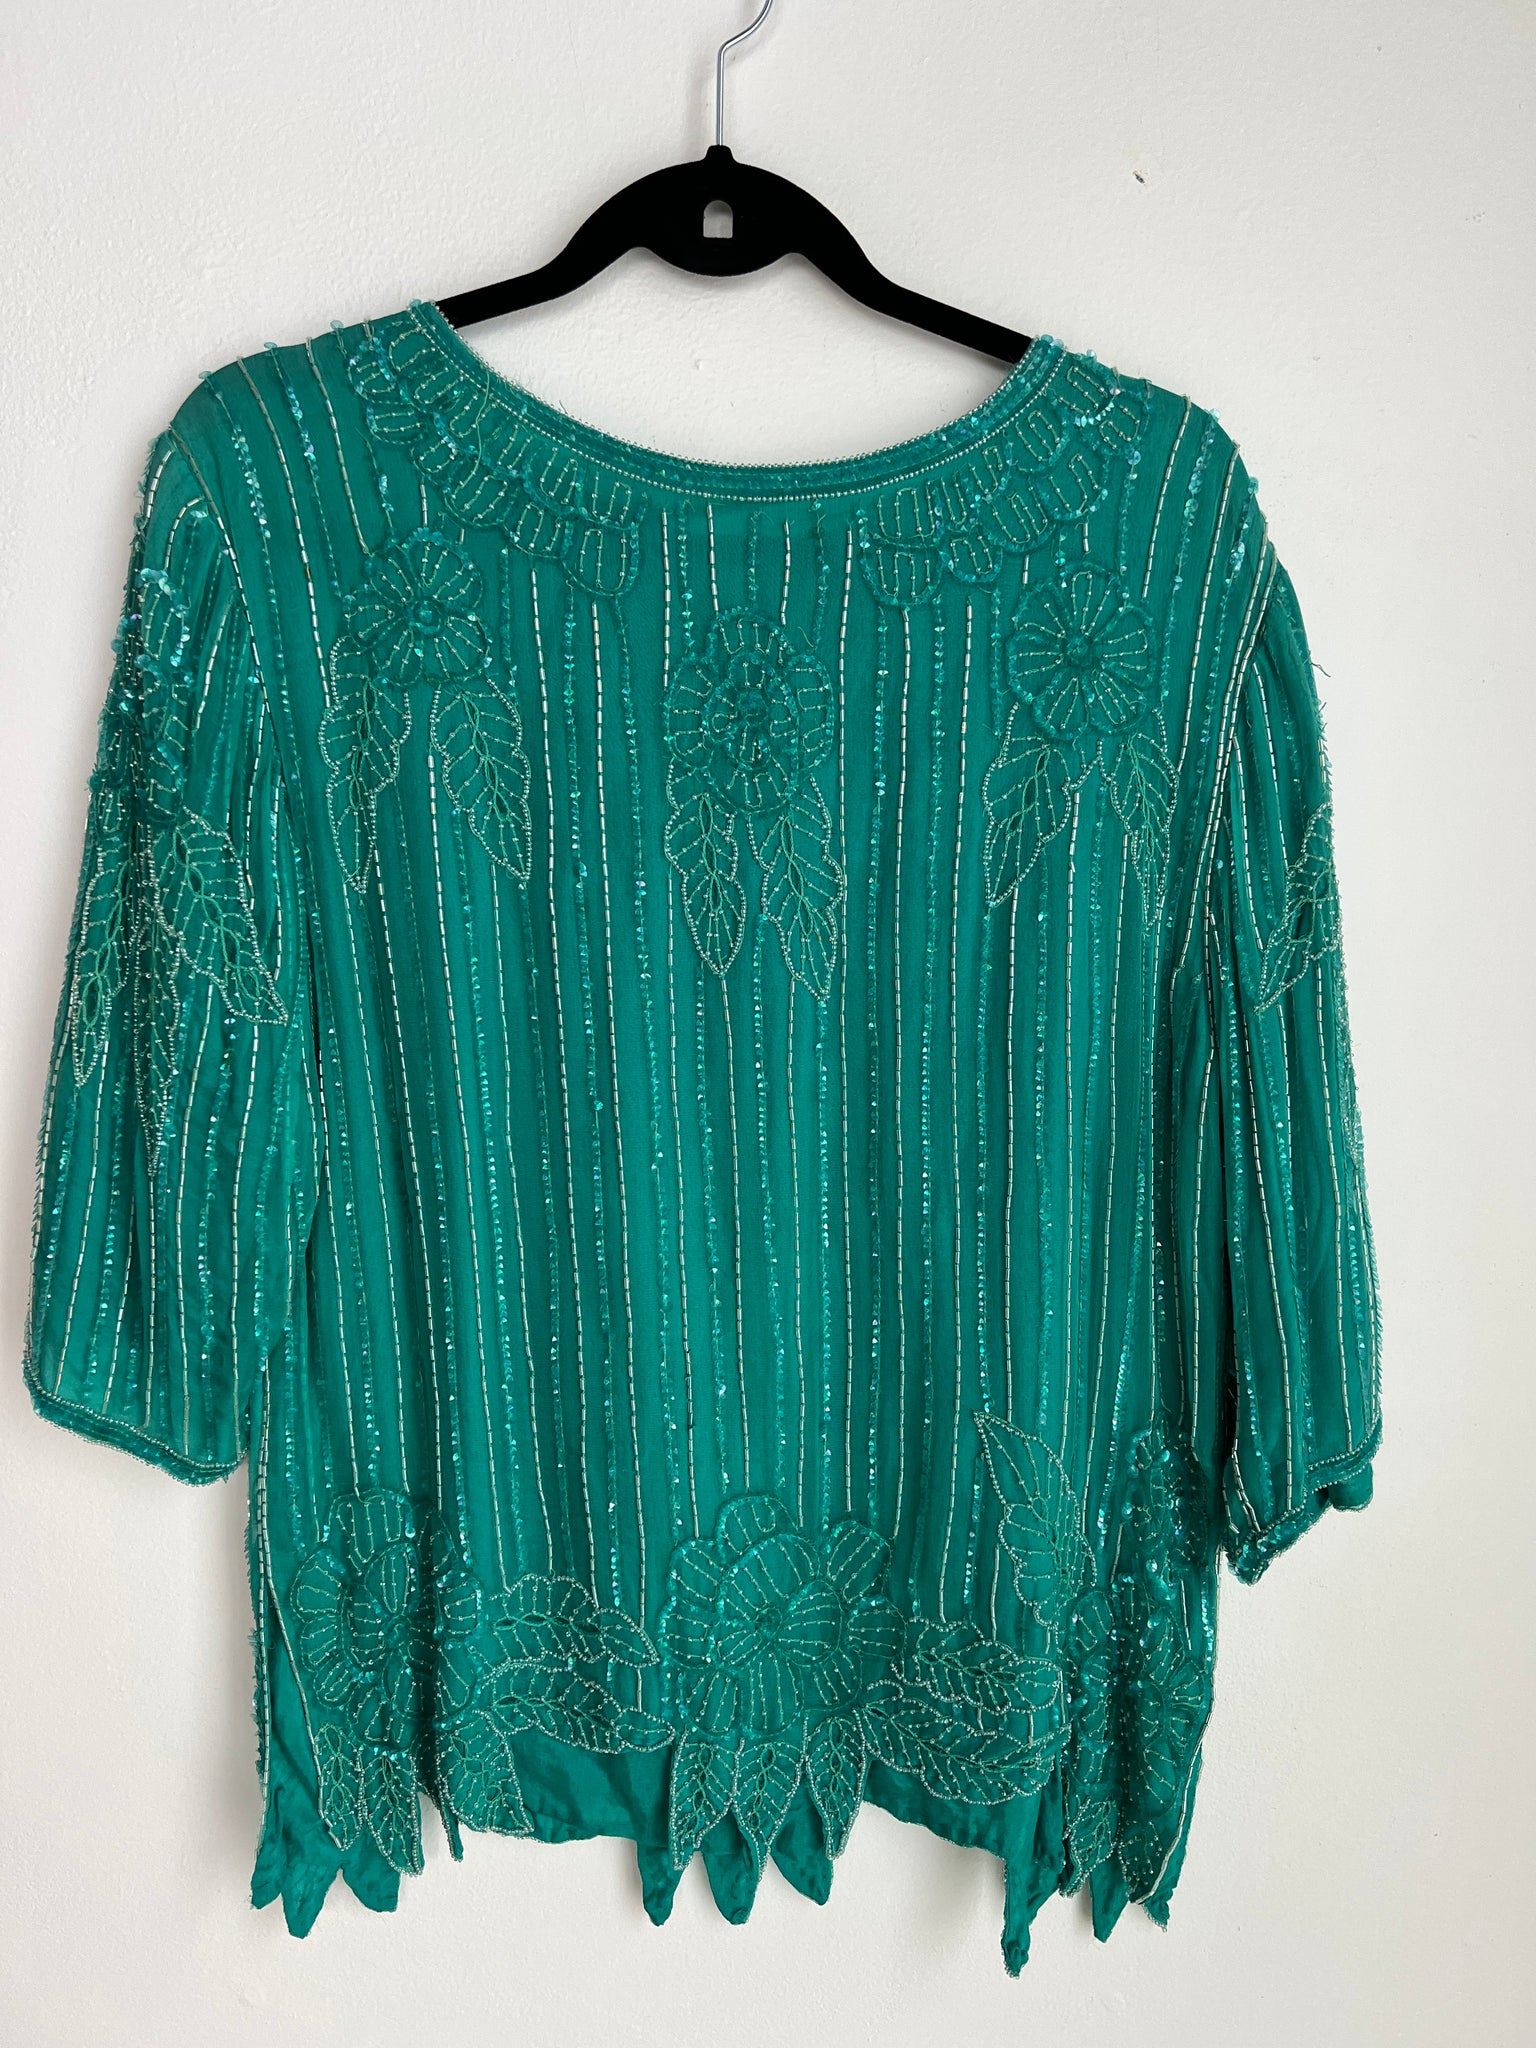 1980s TOP- green silk sequin top